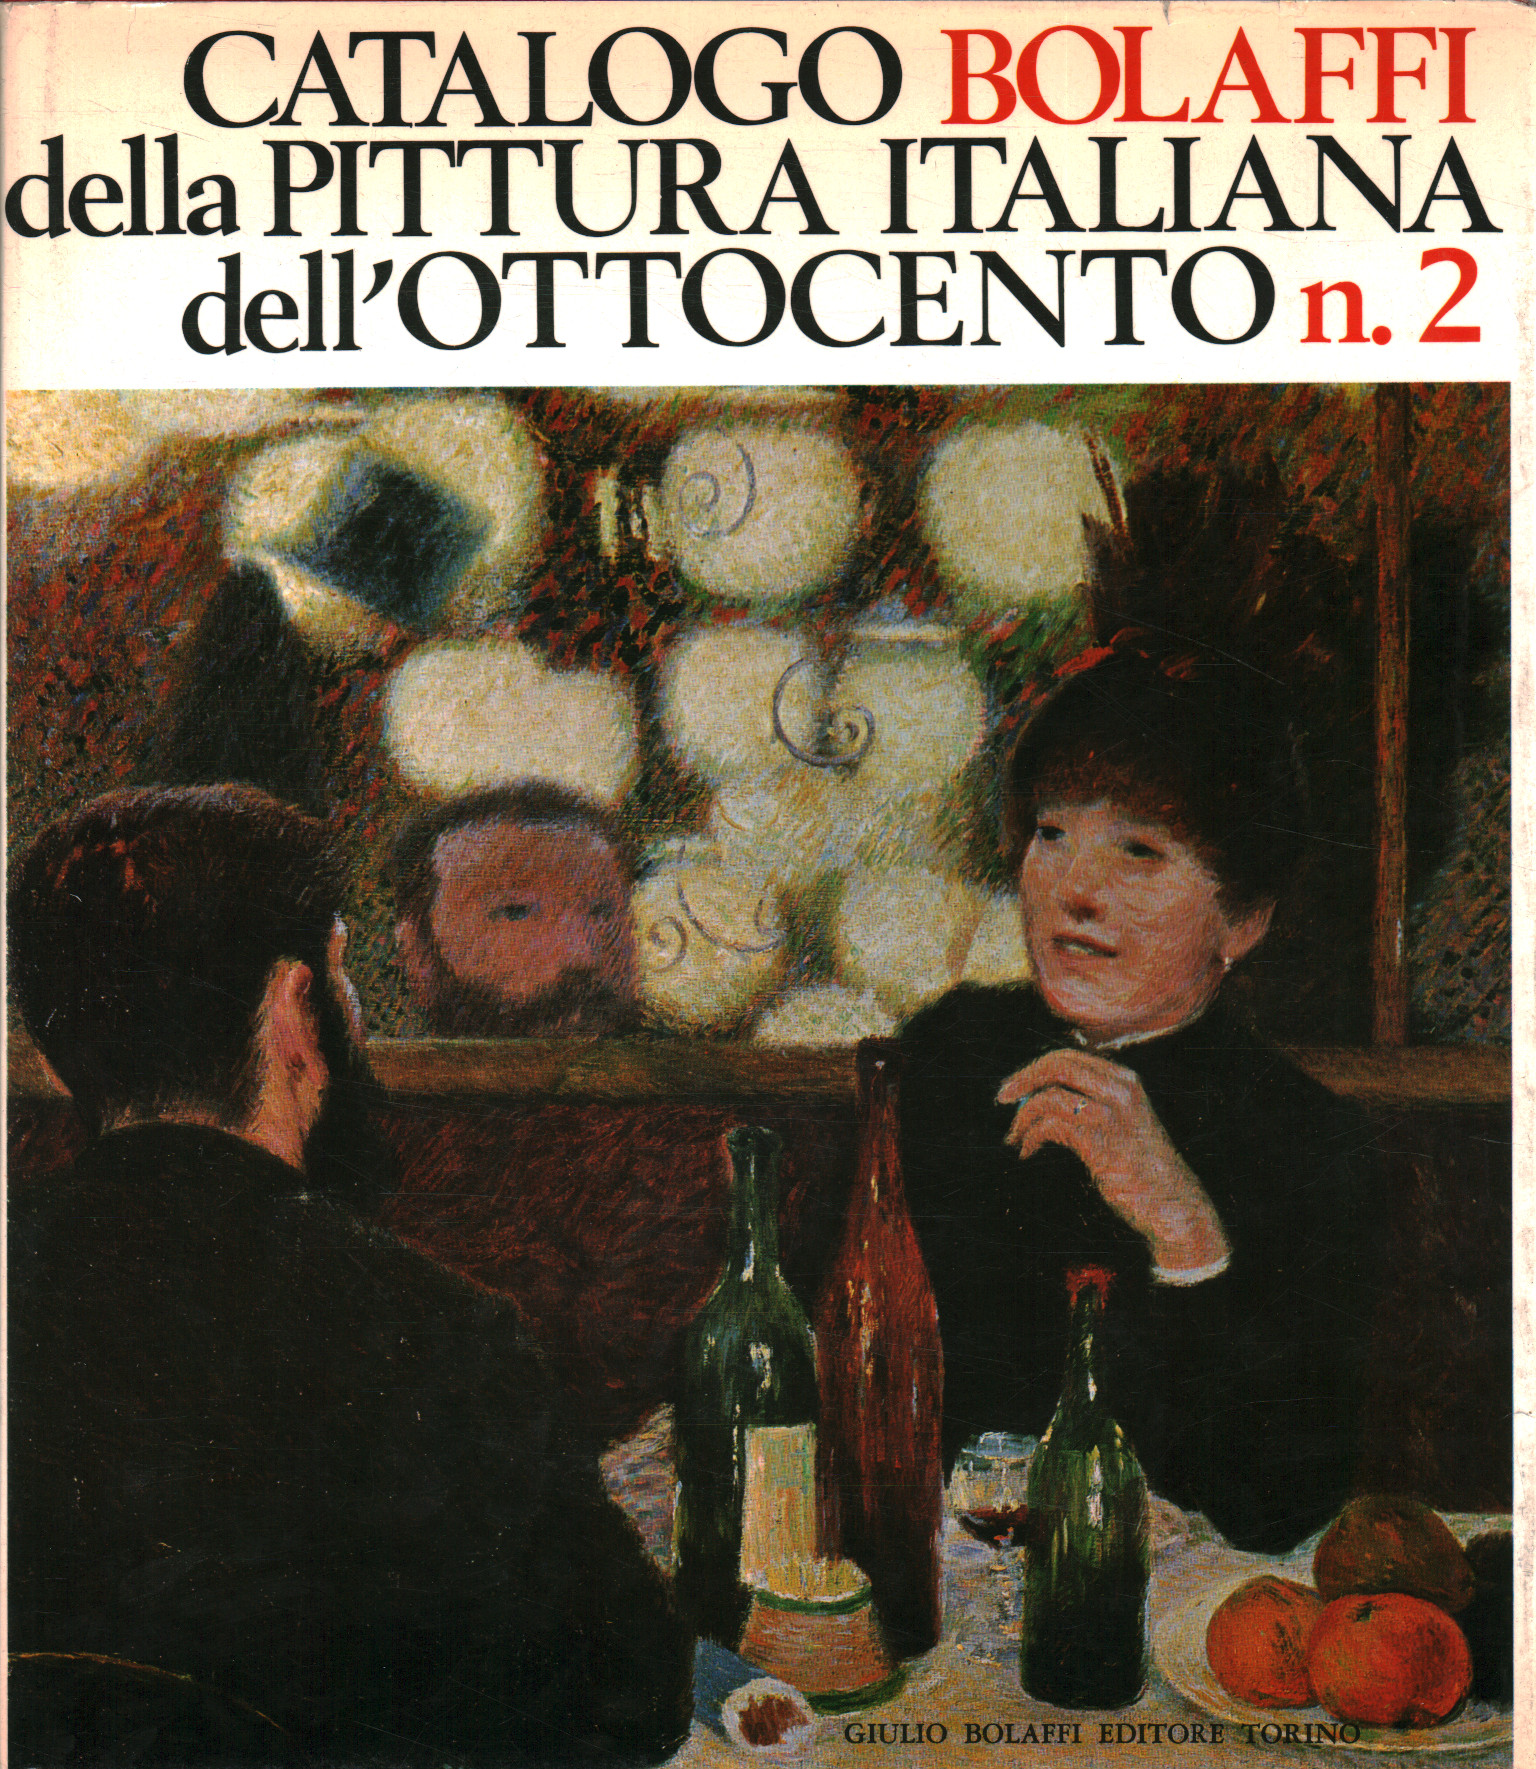 Catálogo Bolaffi de pintura italiana